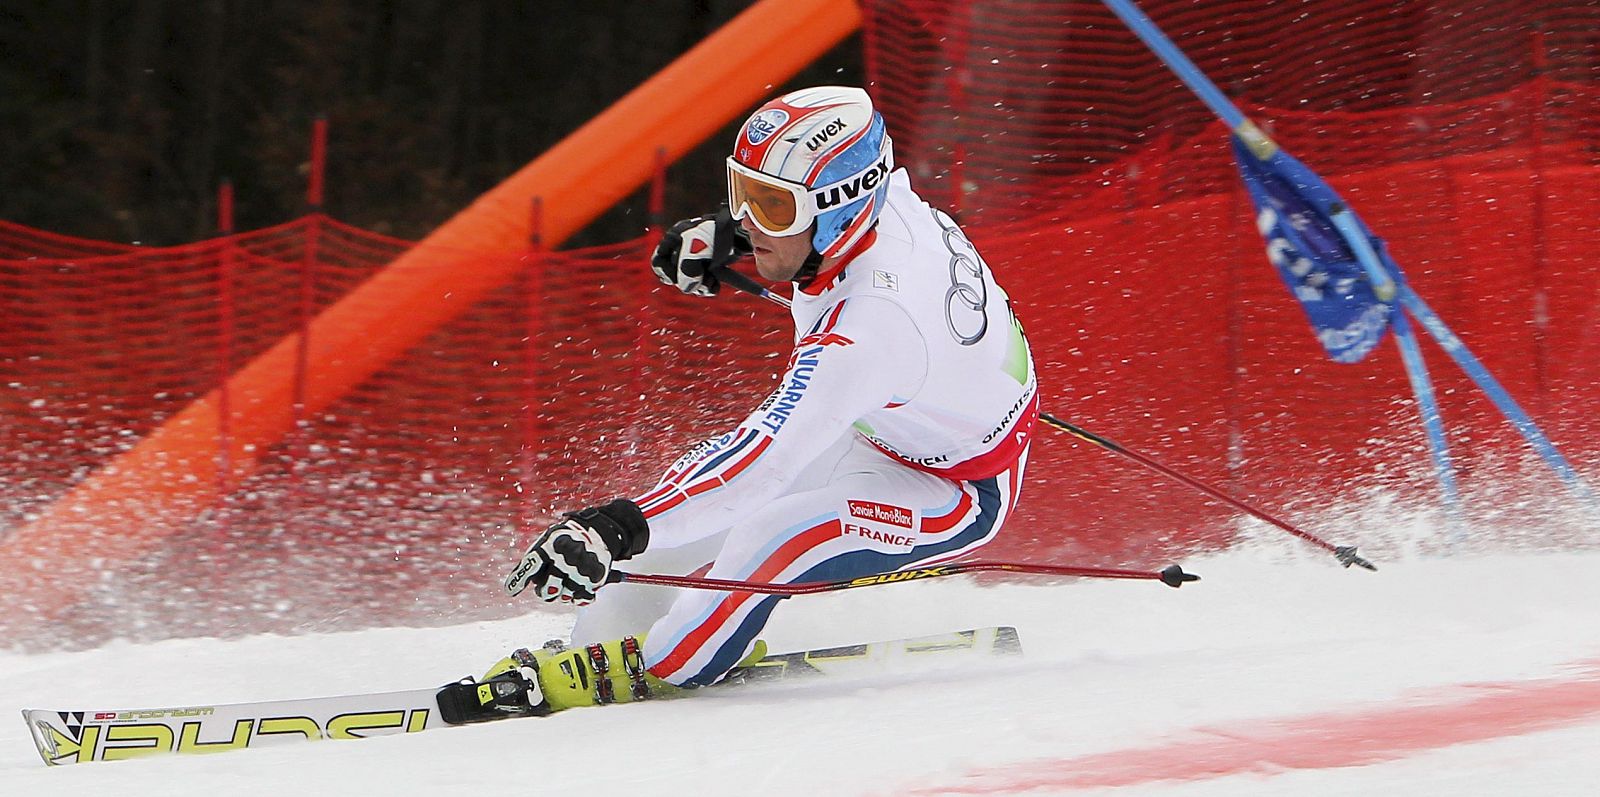 El esquiador francés Thomas Fanara durante la final de la prueba por equipos